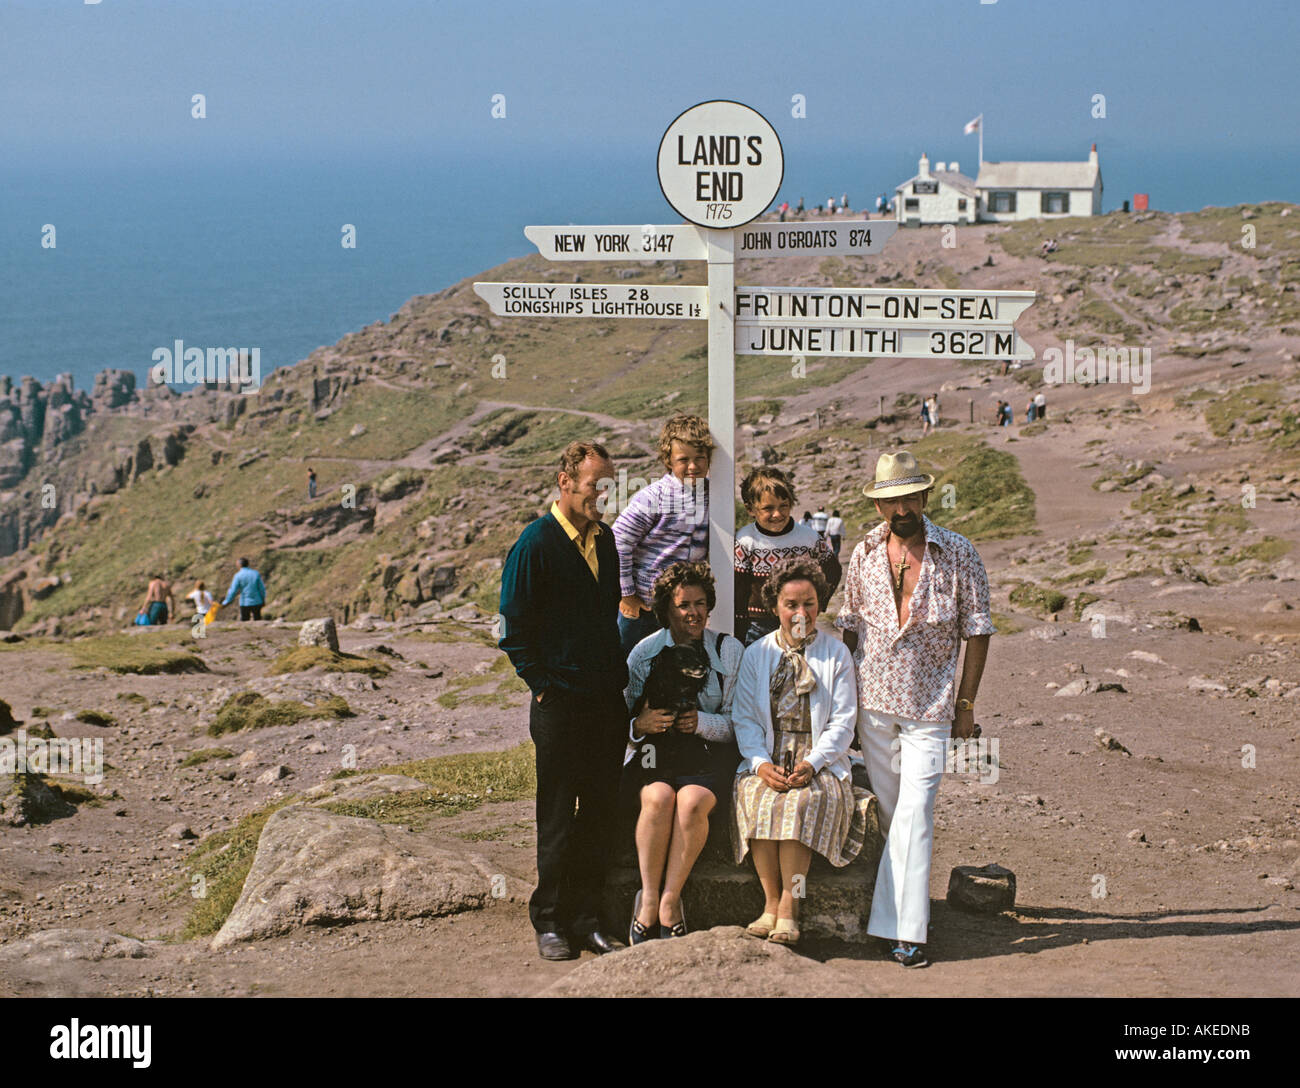 Besucher aus Frinton posieren für ein Erinnerungsfoto unter den Lands End-Zeichen im Jahr 1975 Stockfoto